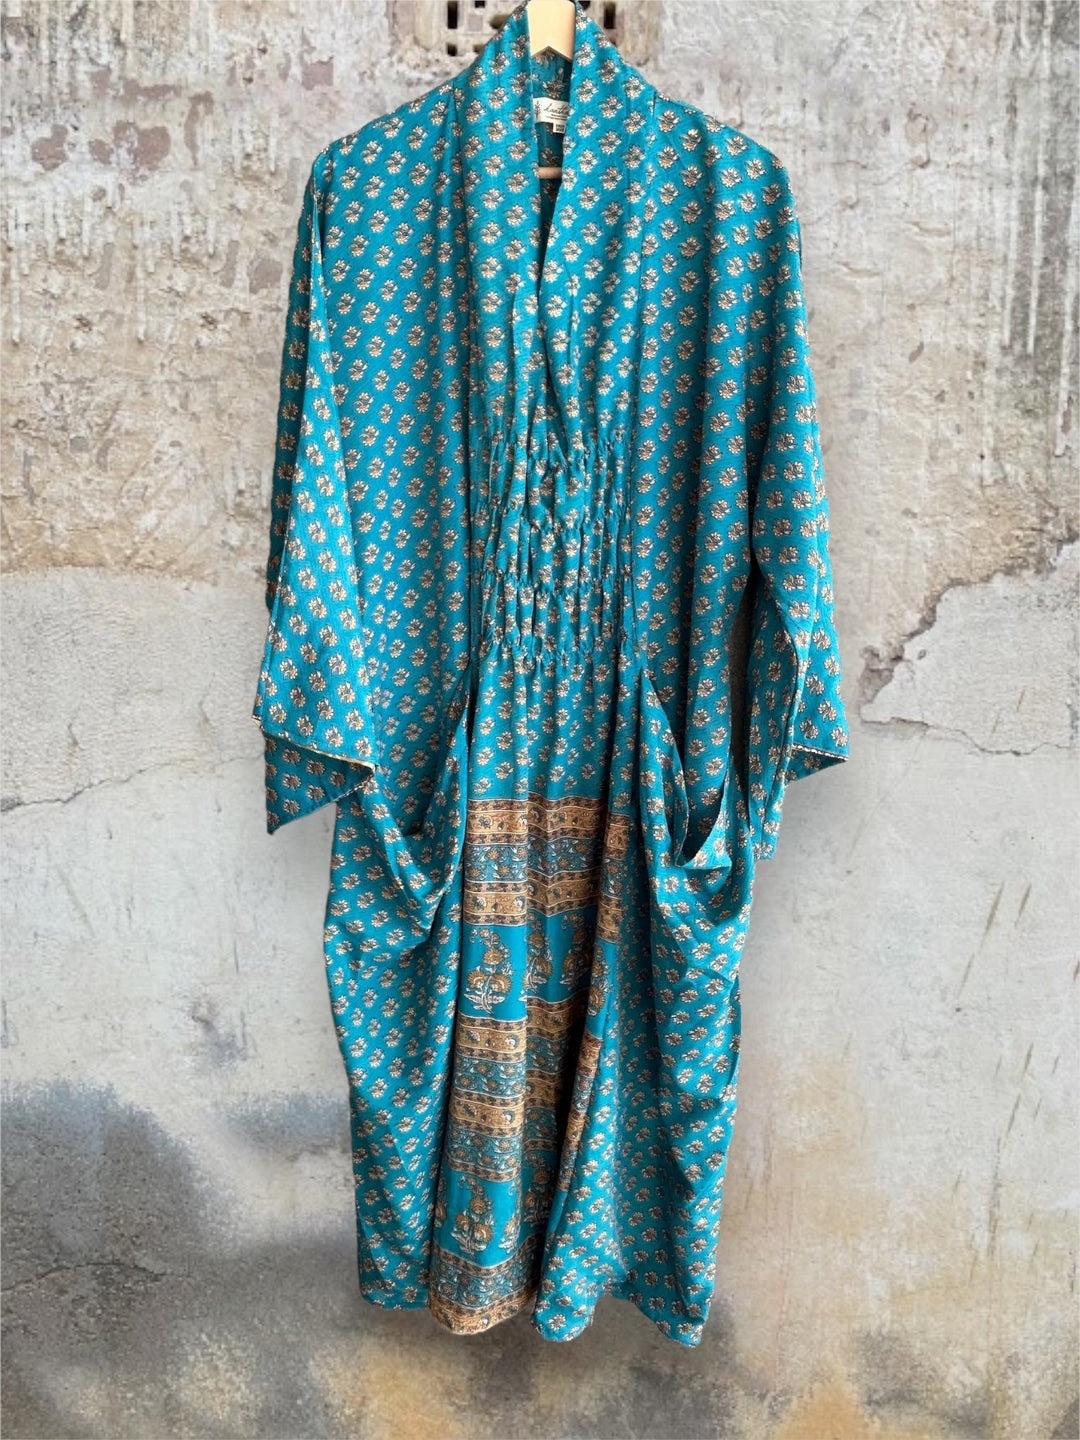 Ruched Dress 0424 084 - Kantha Bae